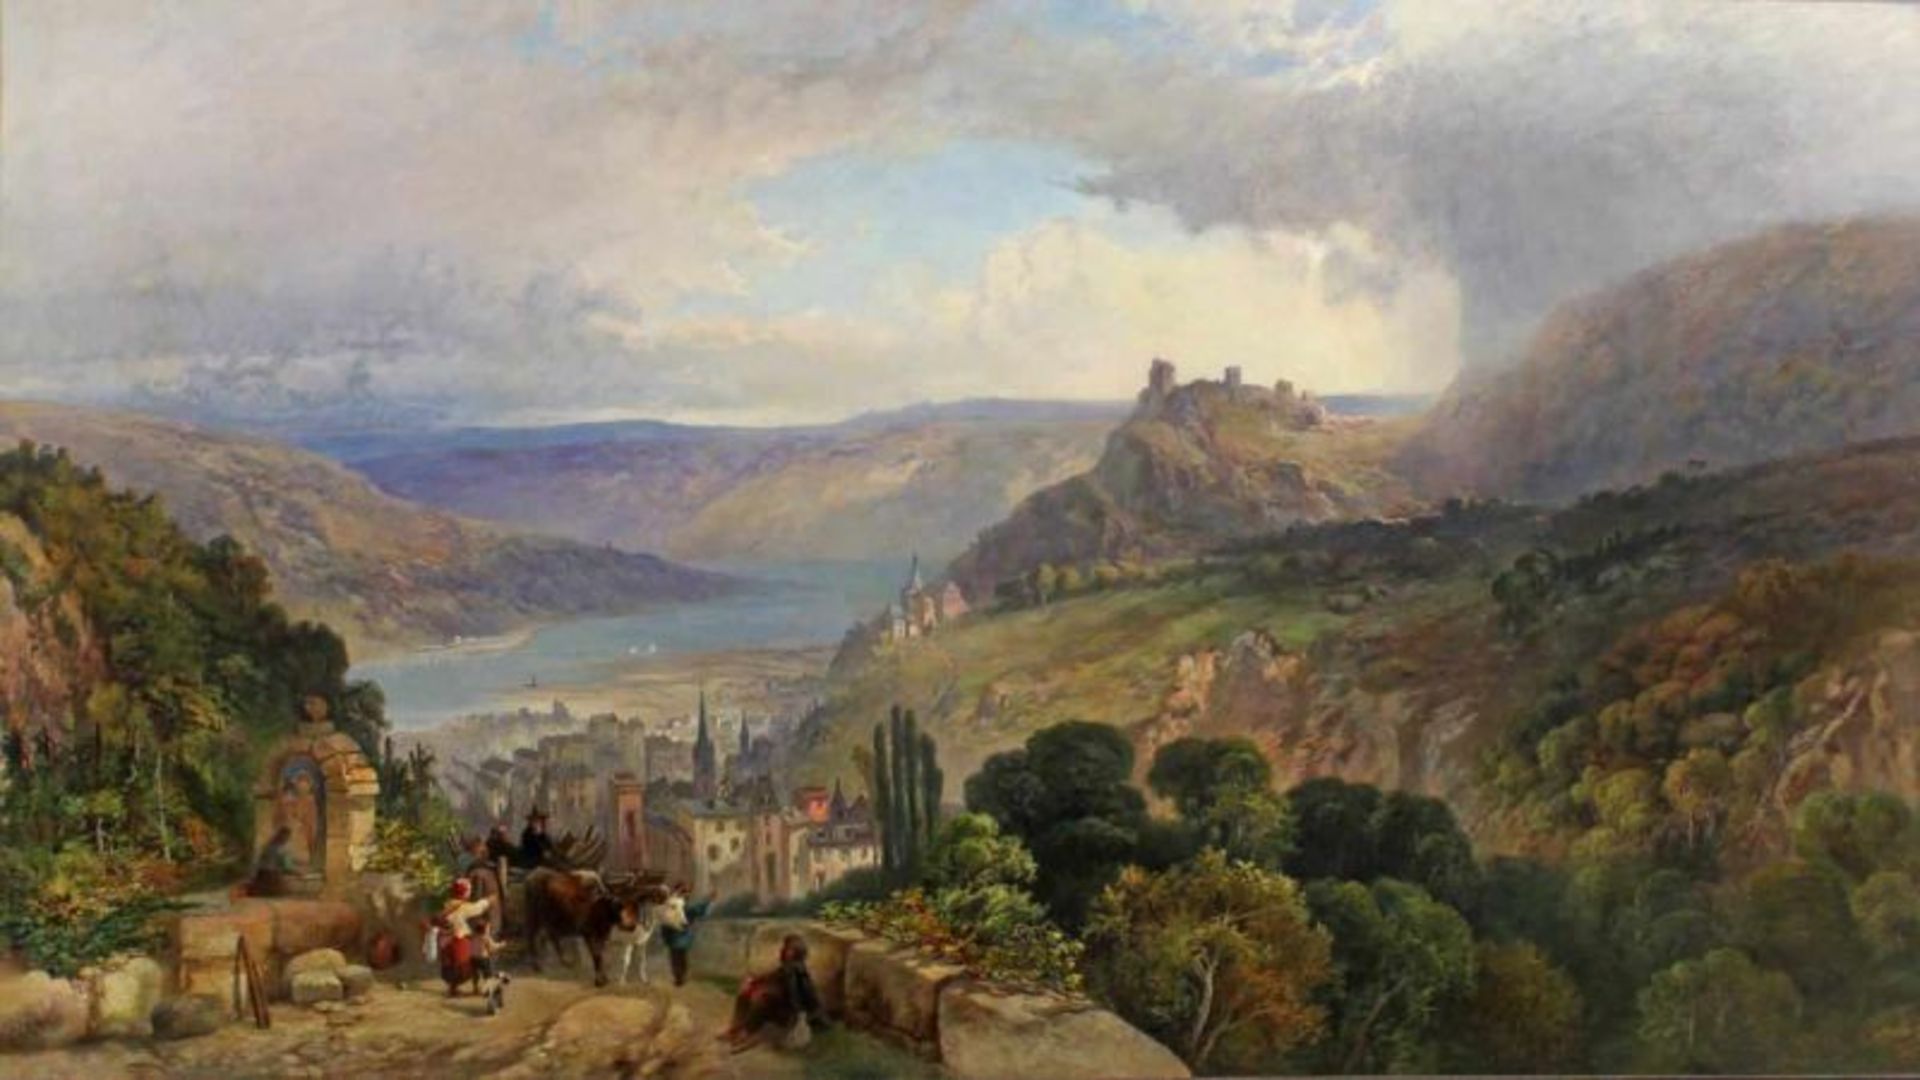 Fleury, J.V. de (in London tätiger Landschaftsmaler, nachweisbar zwischen 1847 bis 1892,